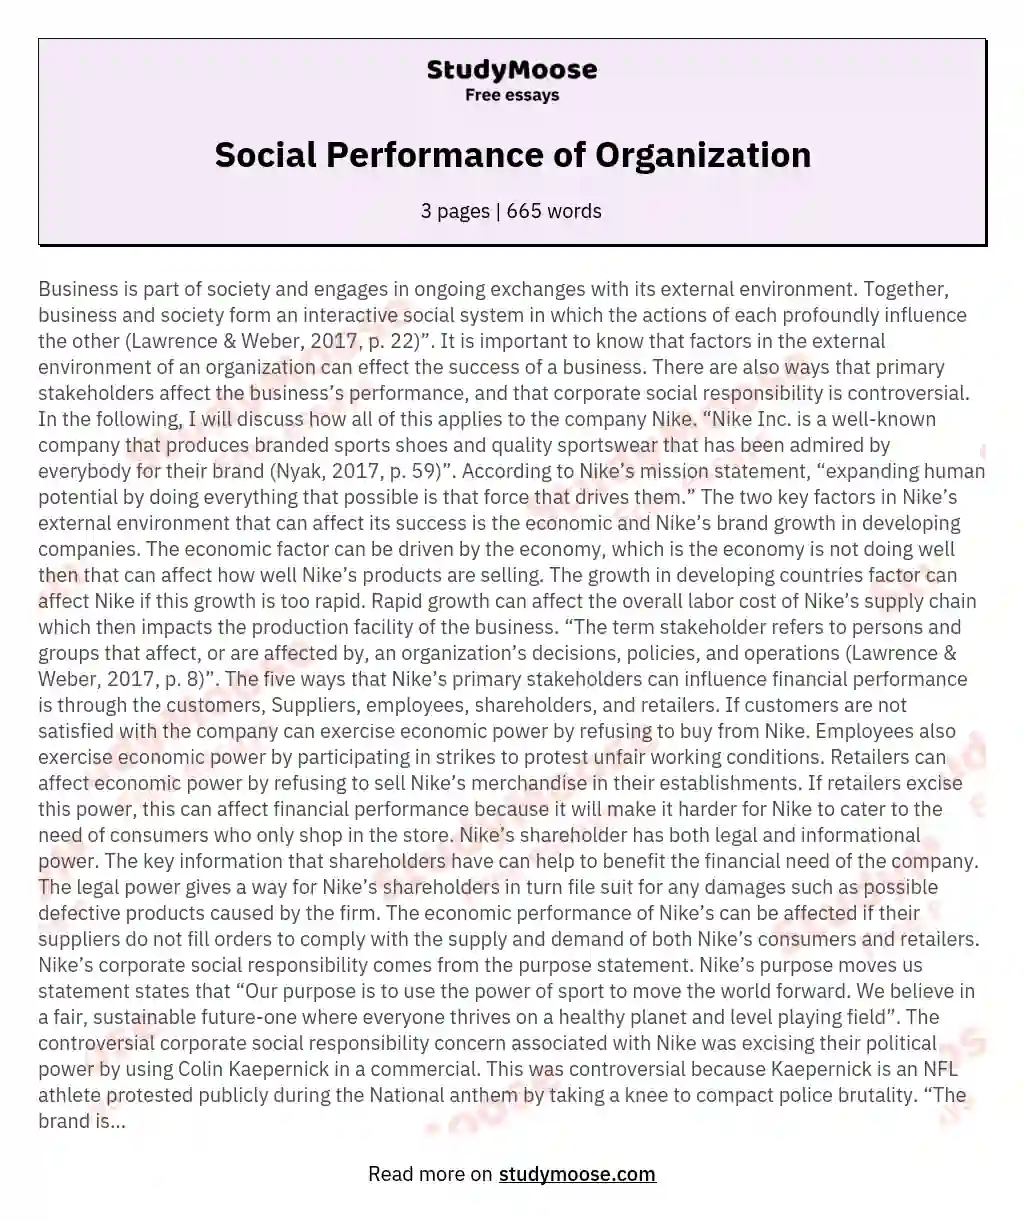 Social Performance of Organization essay